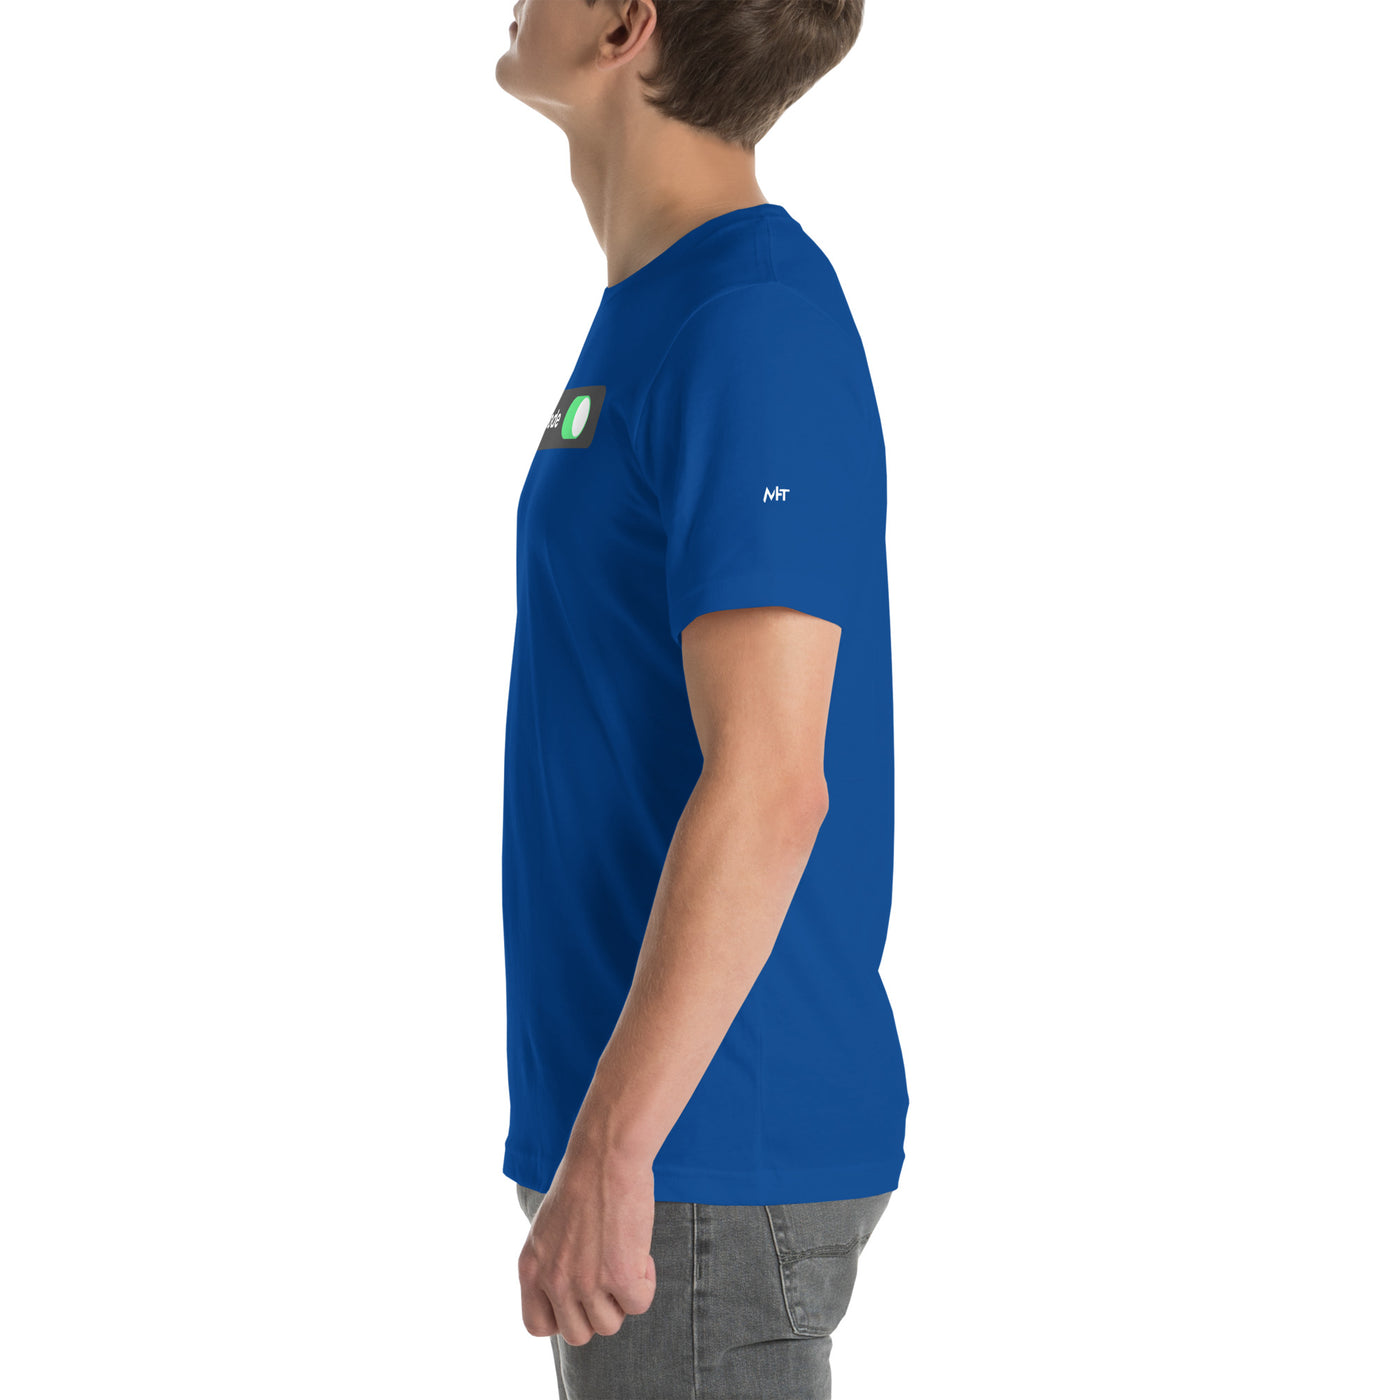 Developer Mode On - Unisex t-shirt